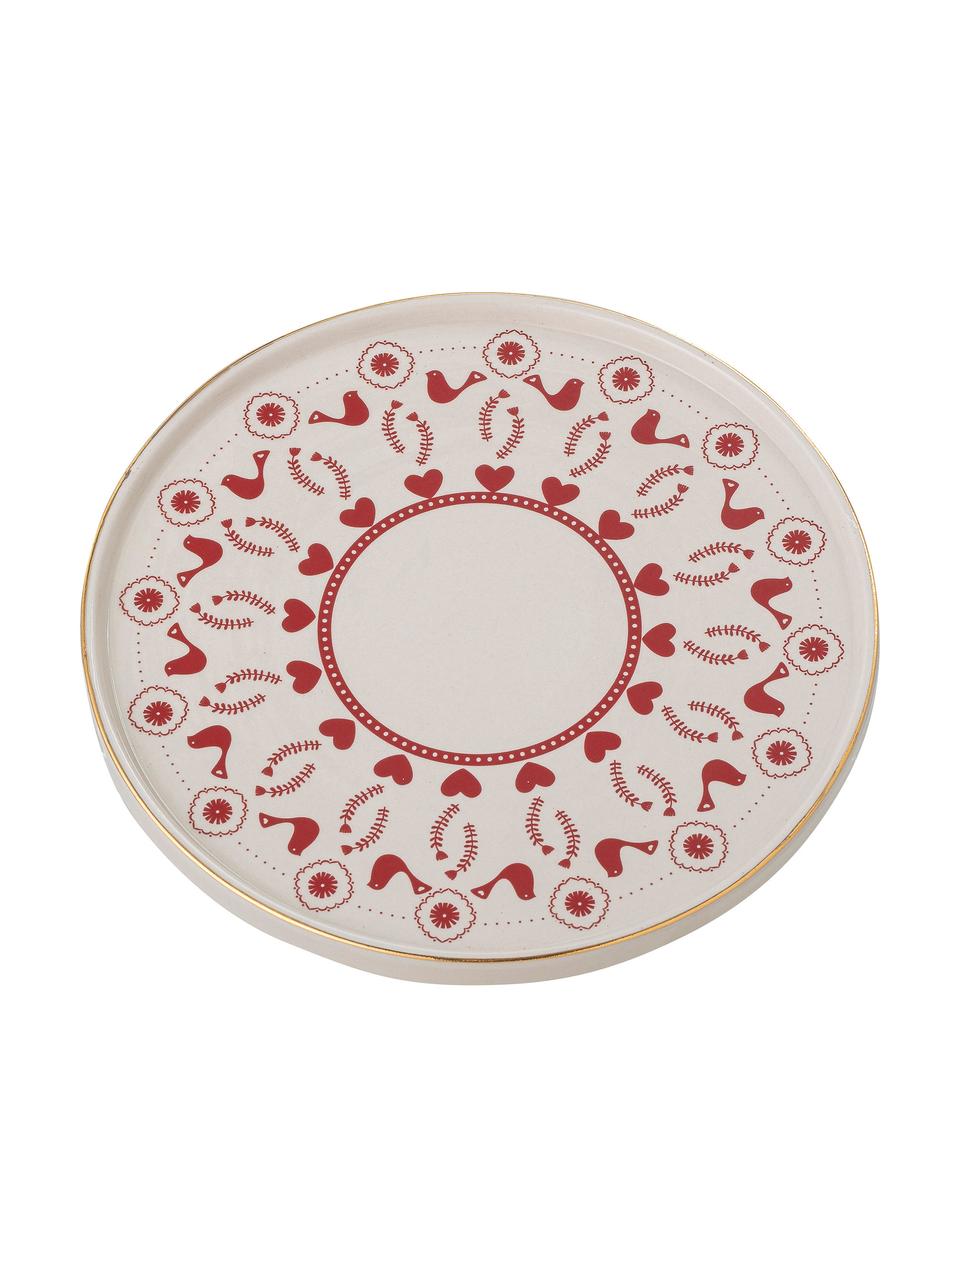 Tortenplatte Jolly aus Steingut mit winterlichen Motiven, Ø 26 cm, Steingut, Rot, Weiß, gemustert, Ø 26 x H 7 cm